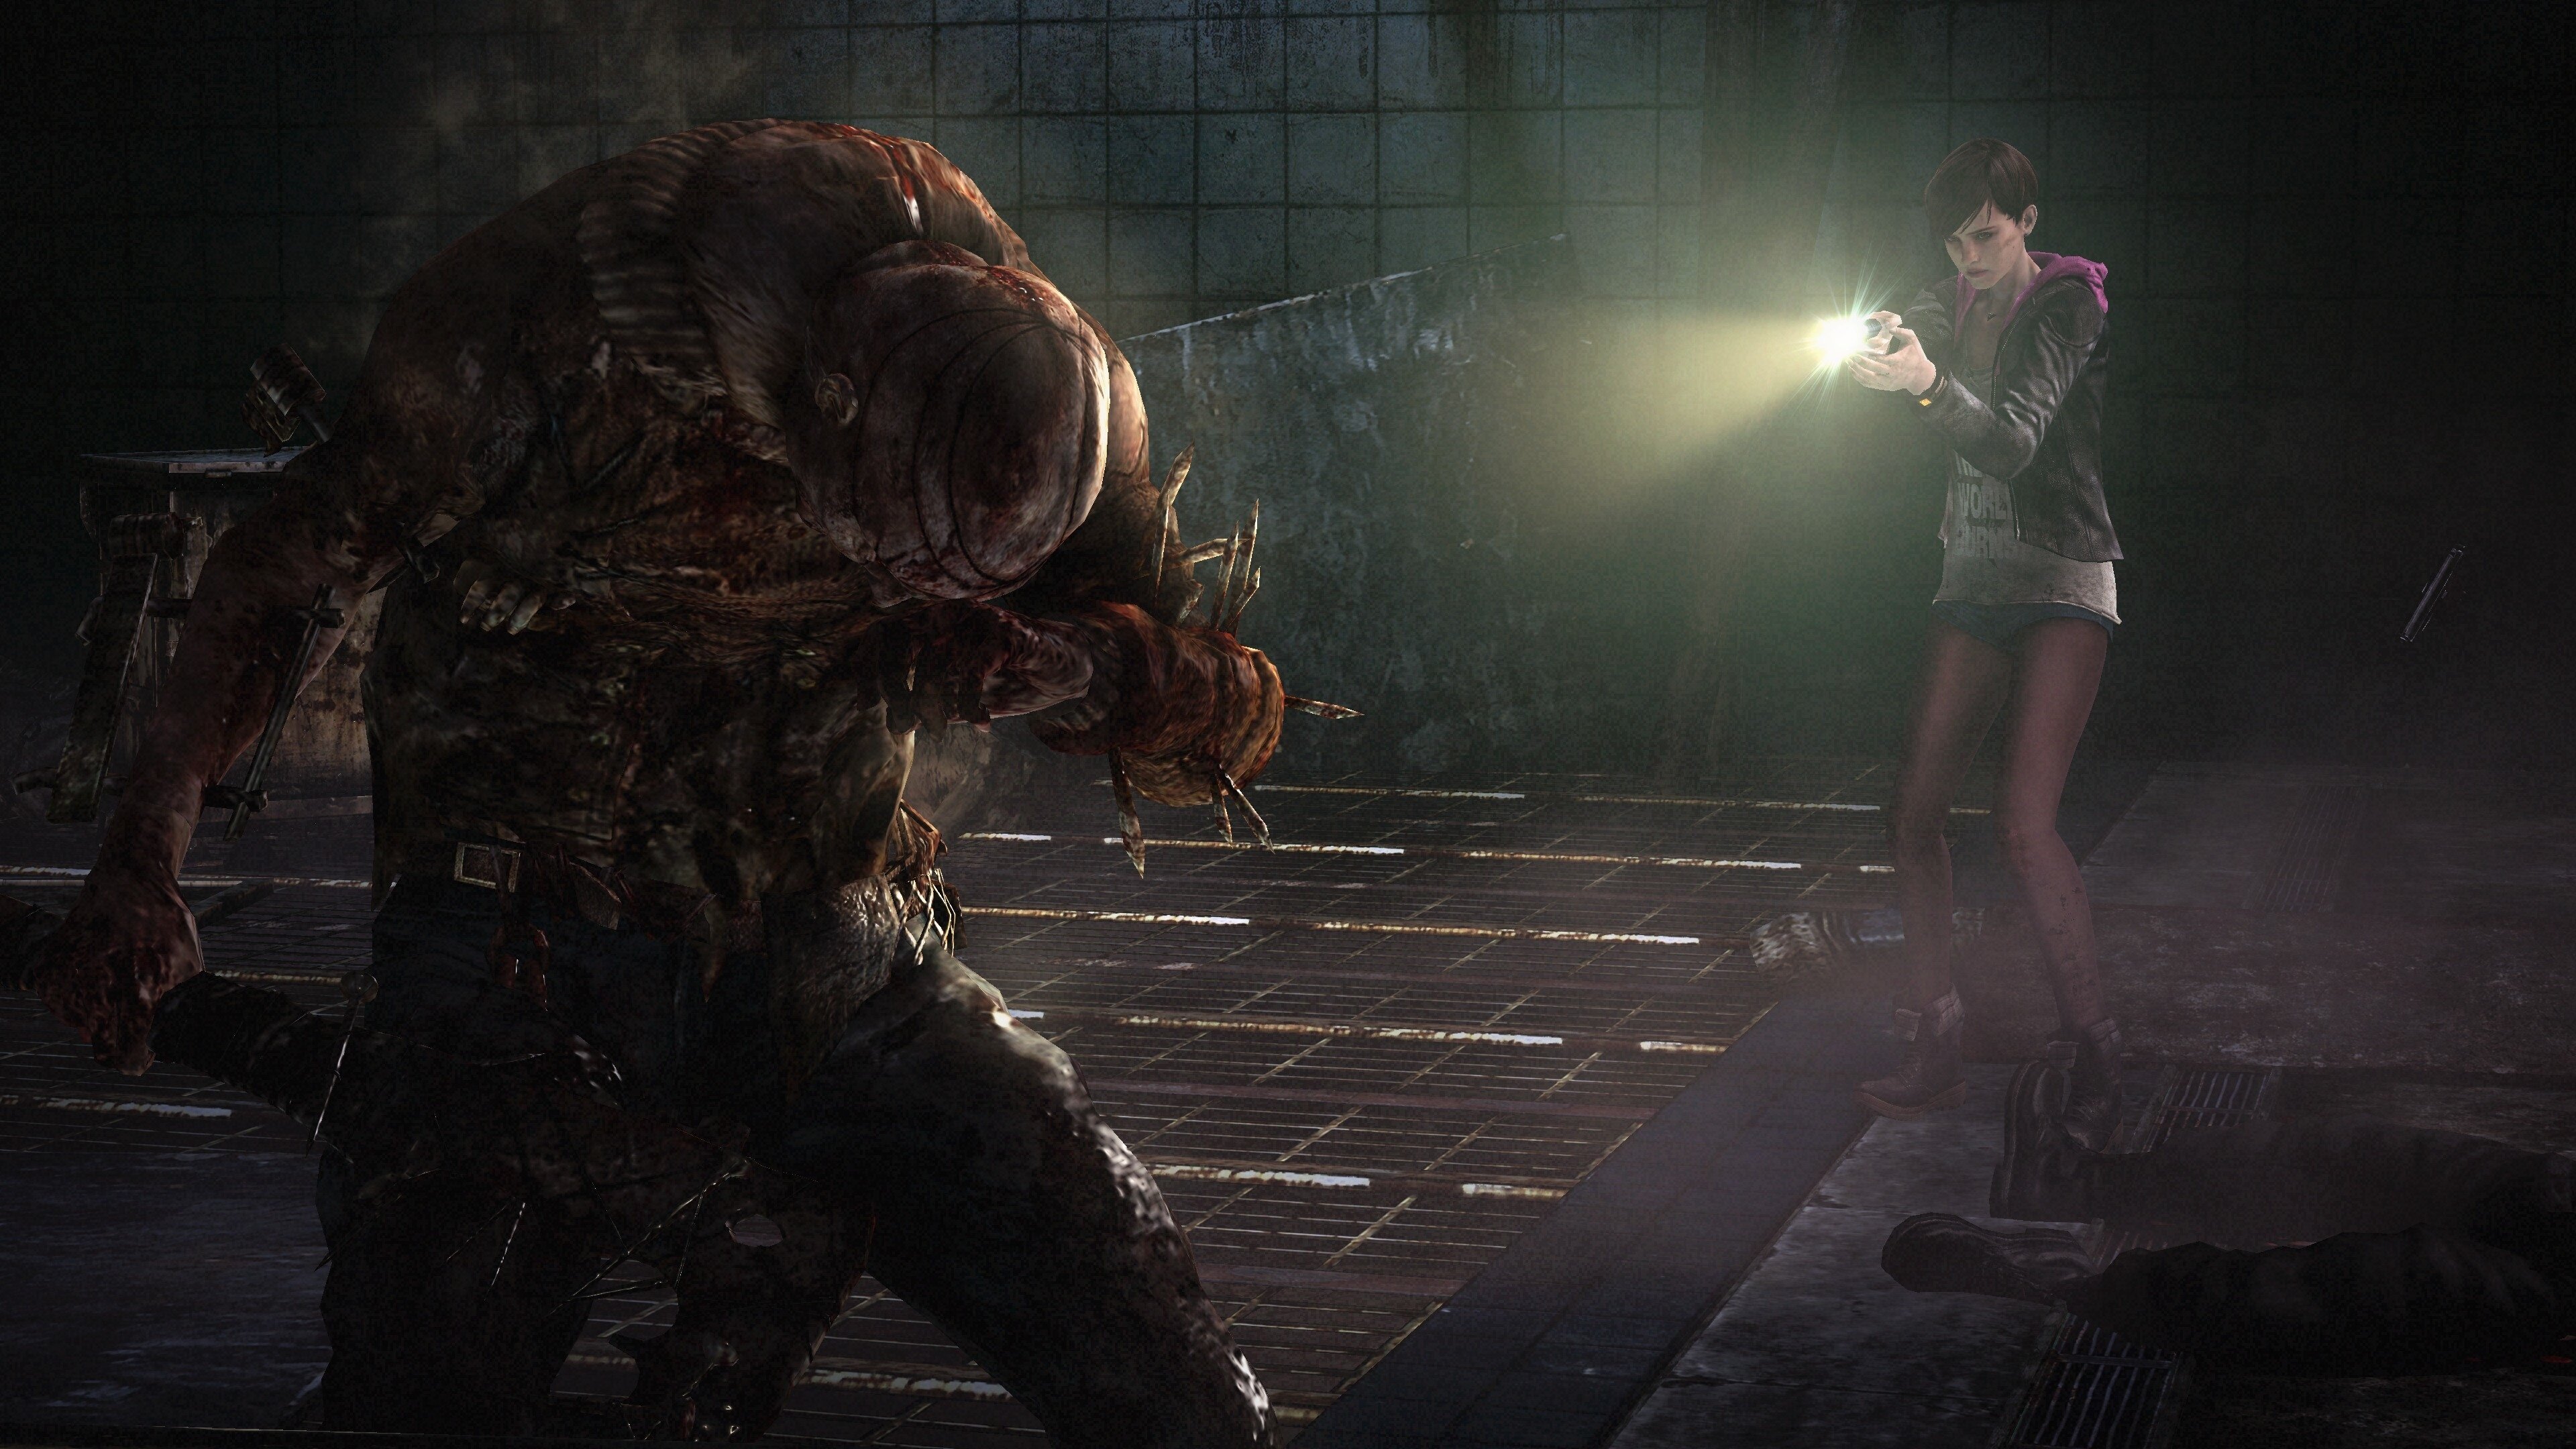 Resident Evil: Revelations Review (PS4)